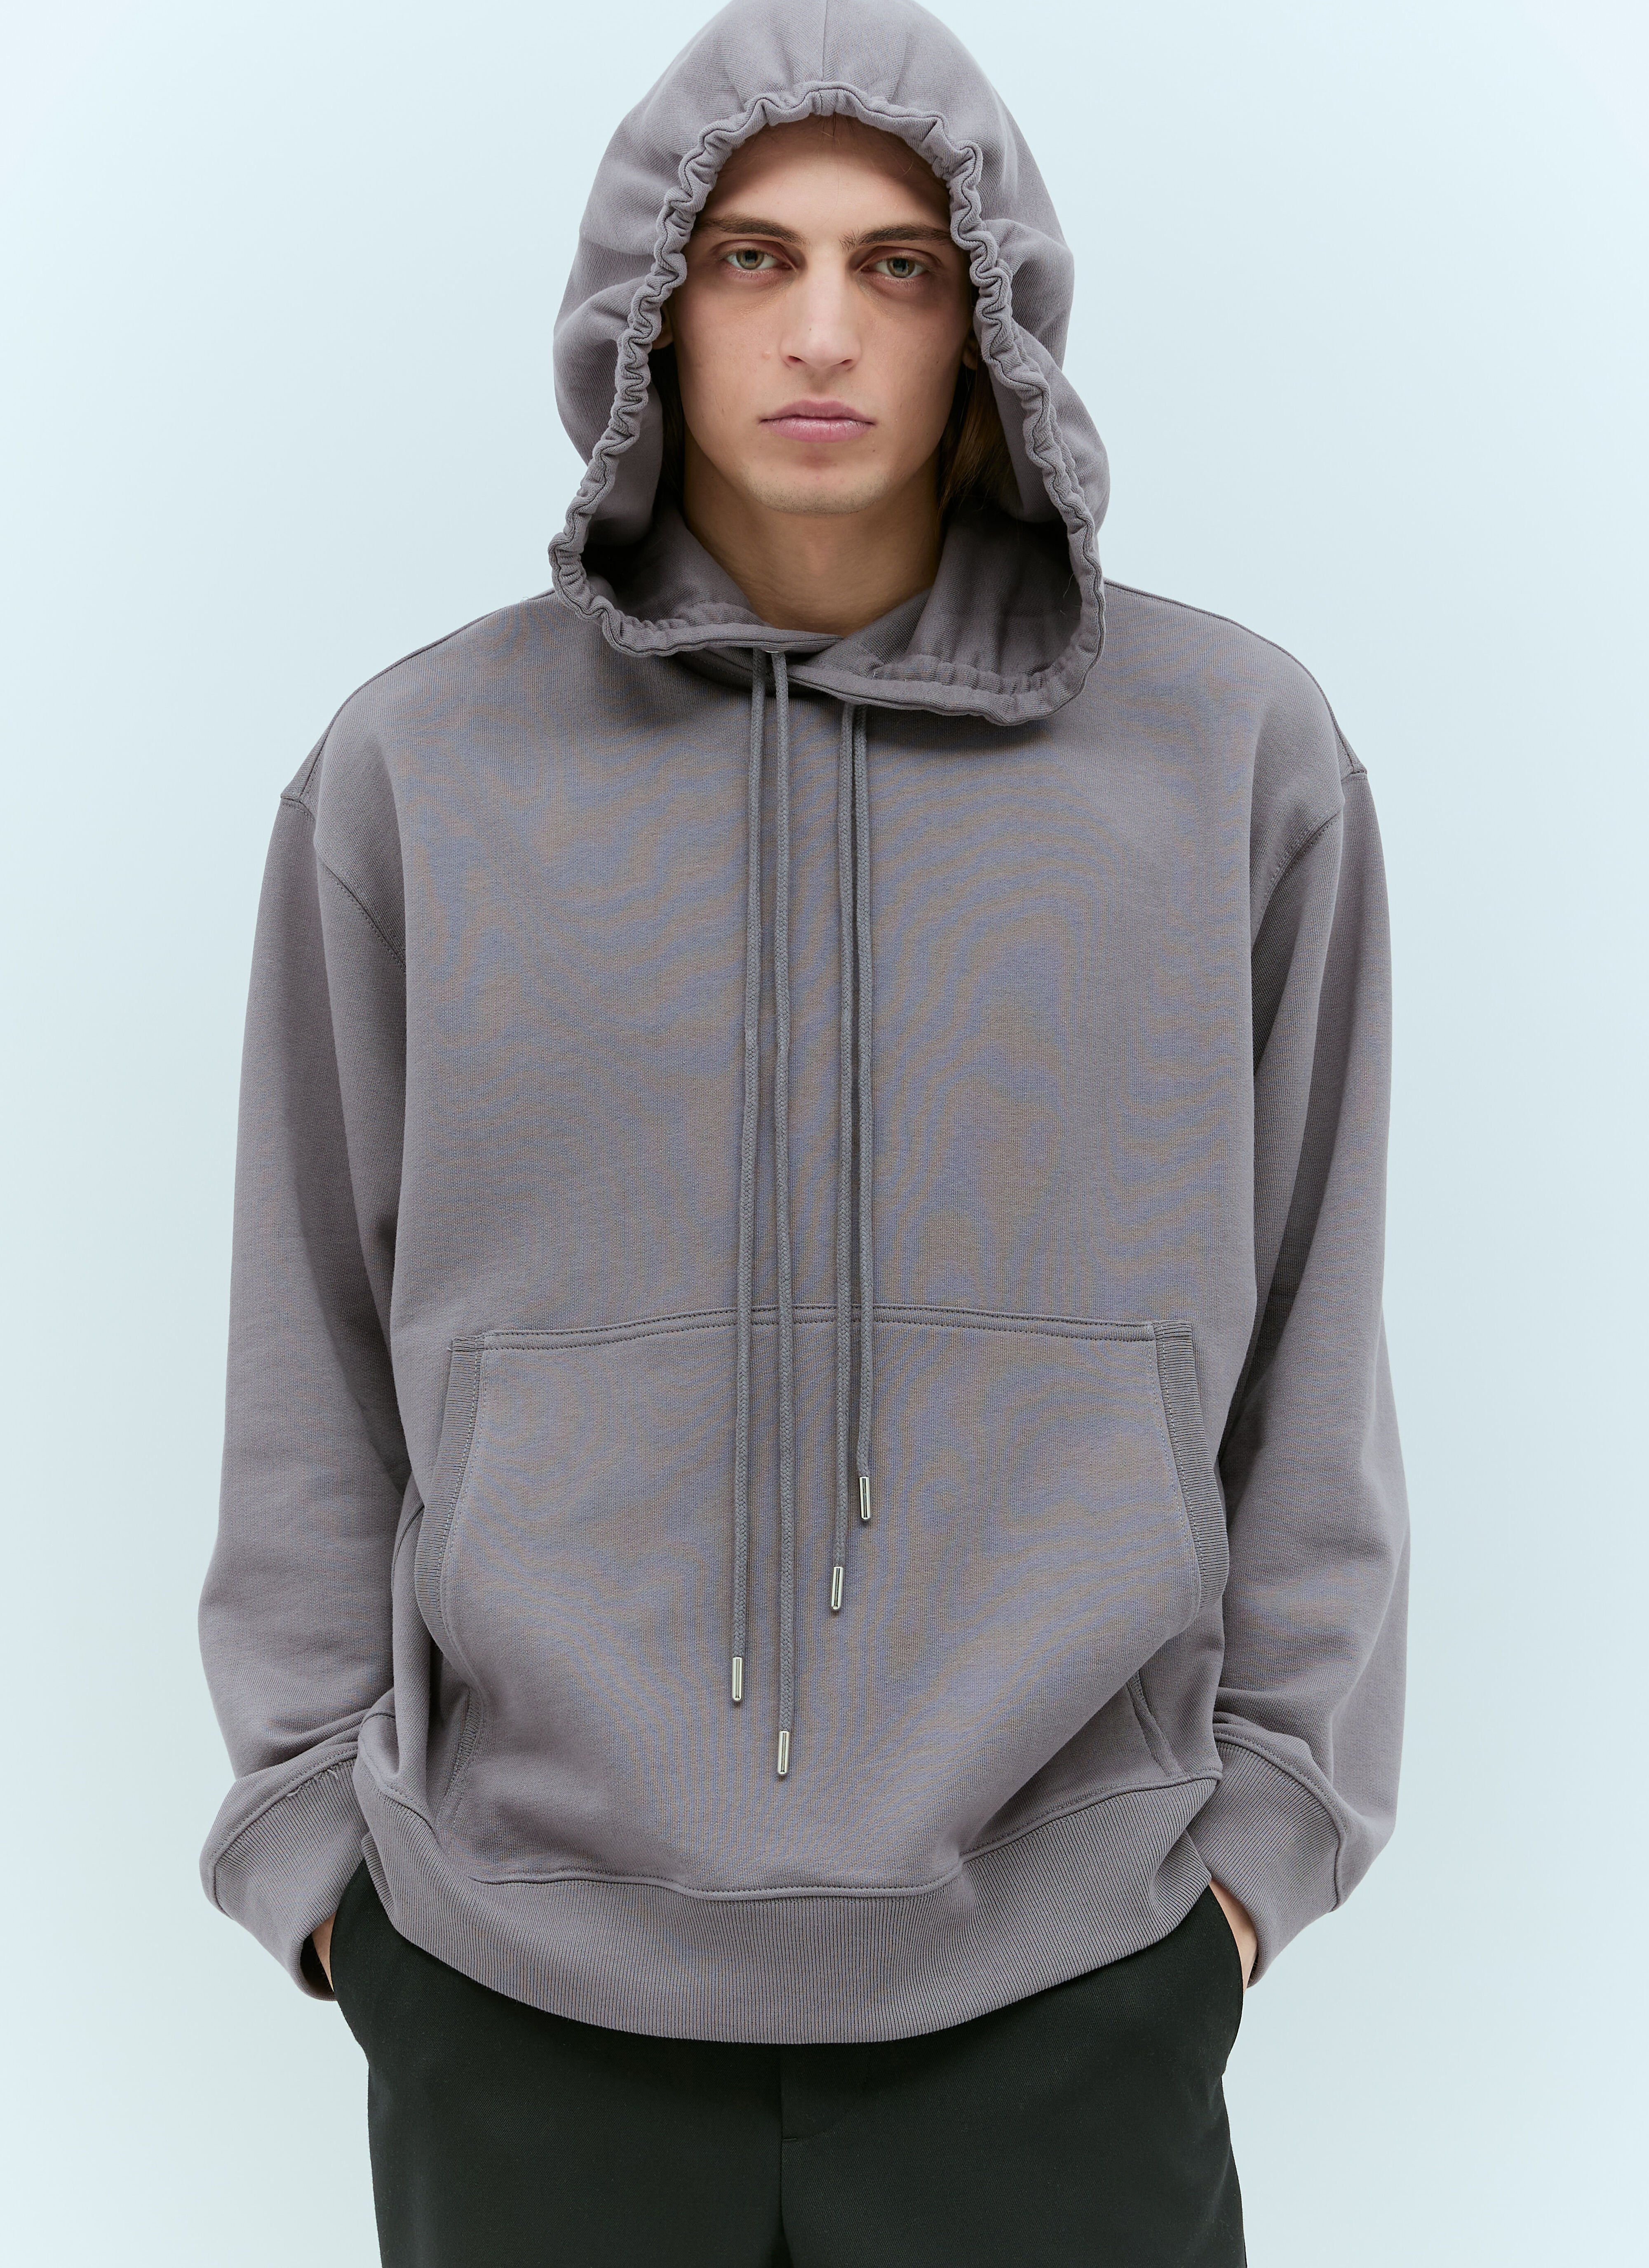 Dries Van Noten Hooded Sweatshirt Grey dvn0156010